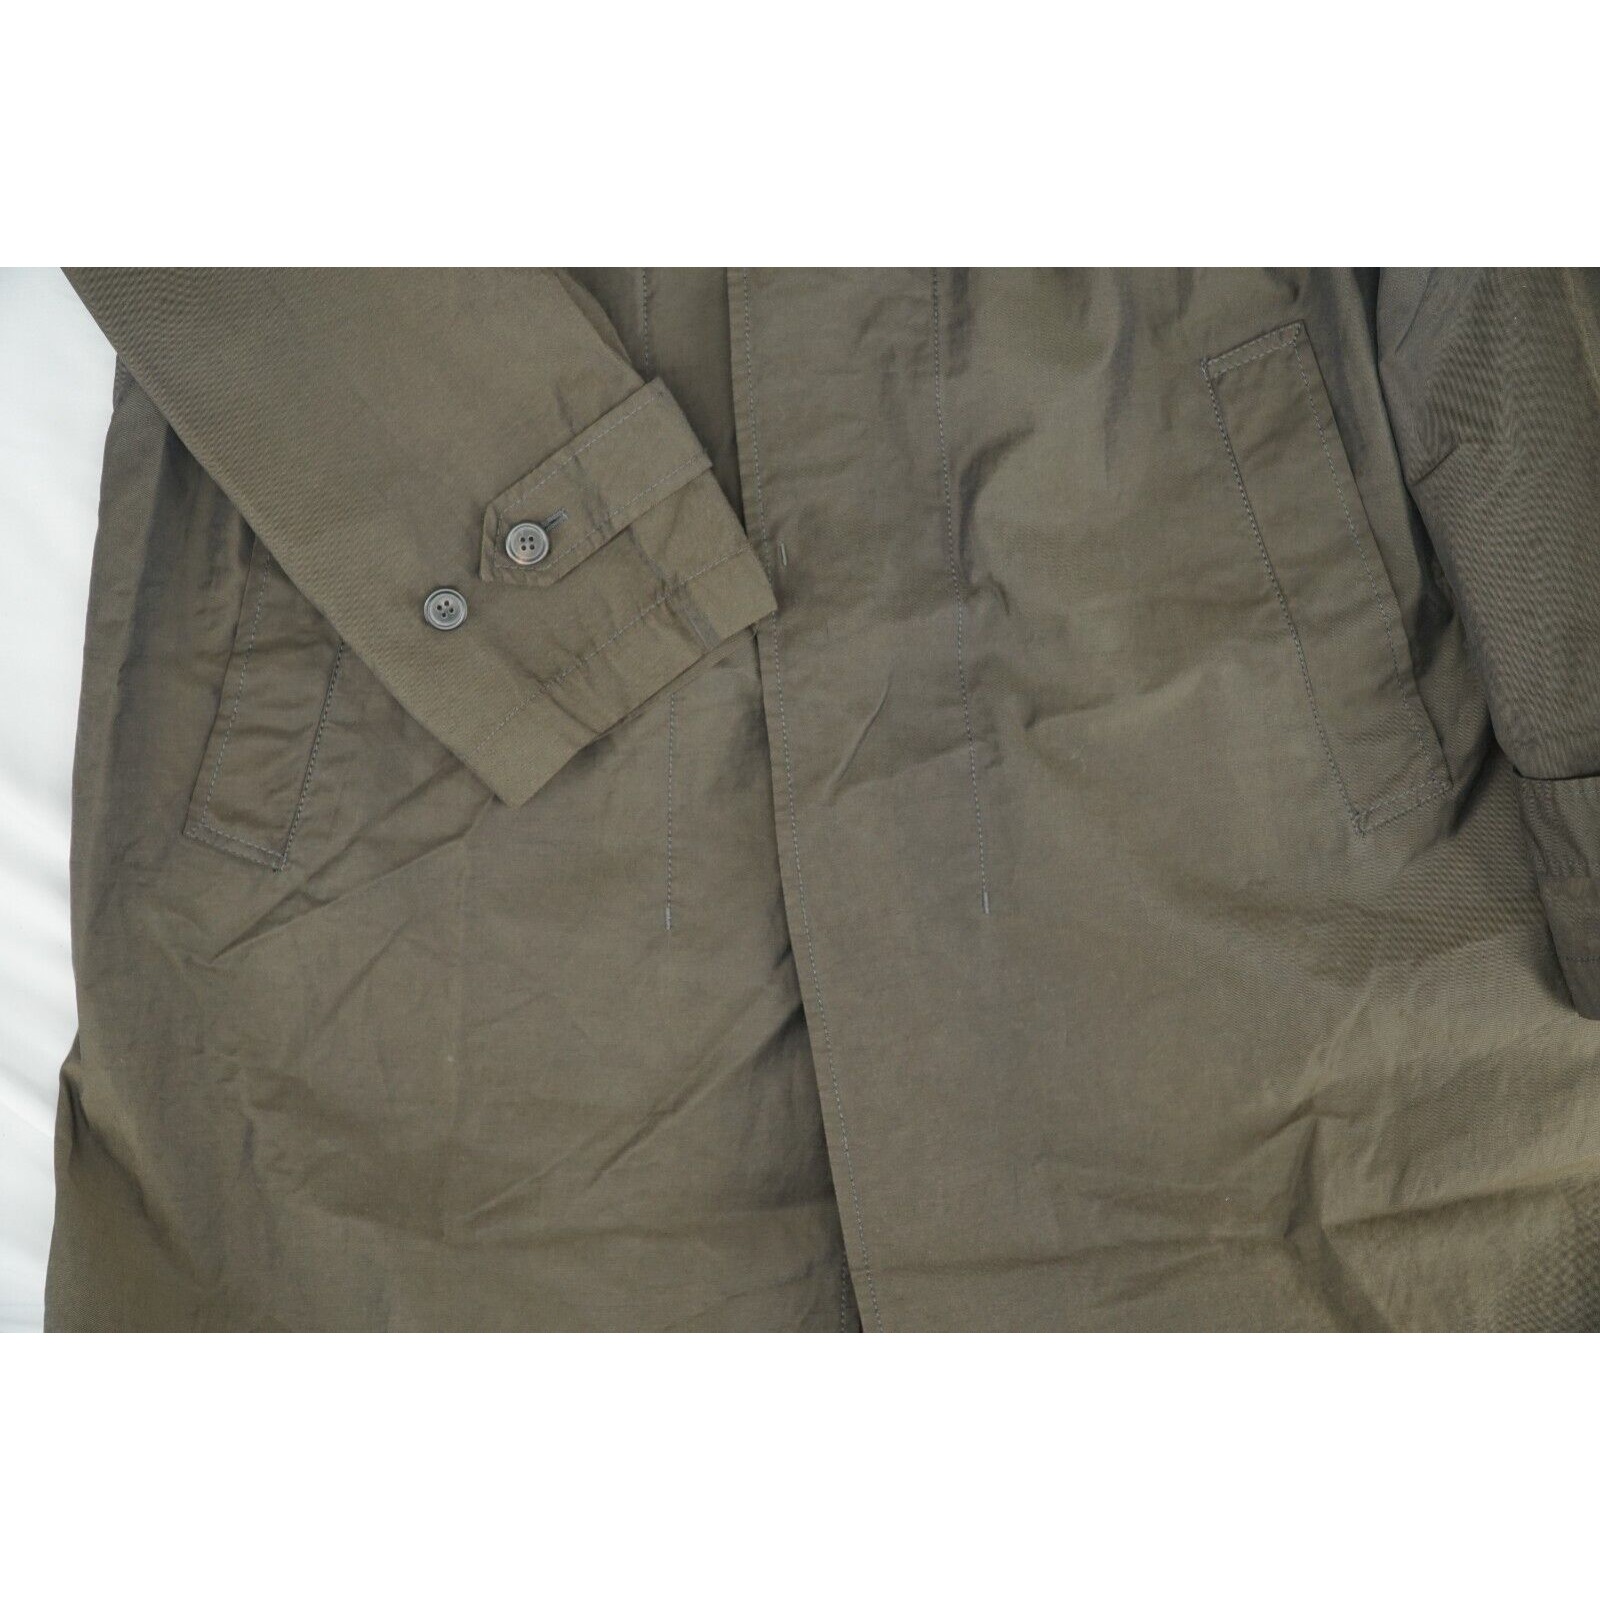 Lanvin Trench Coat Brown Iridescent - Sz 50 - 12